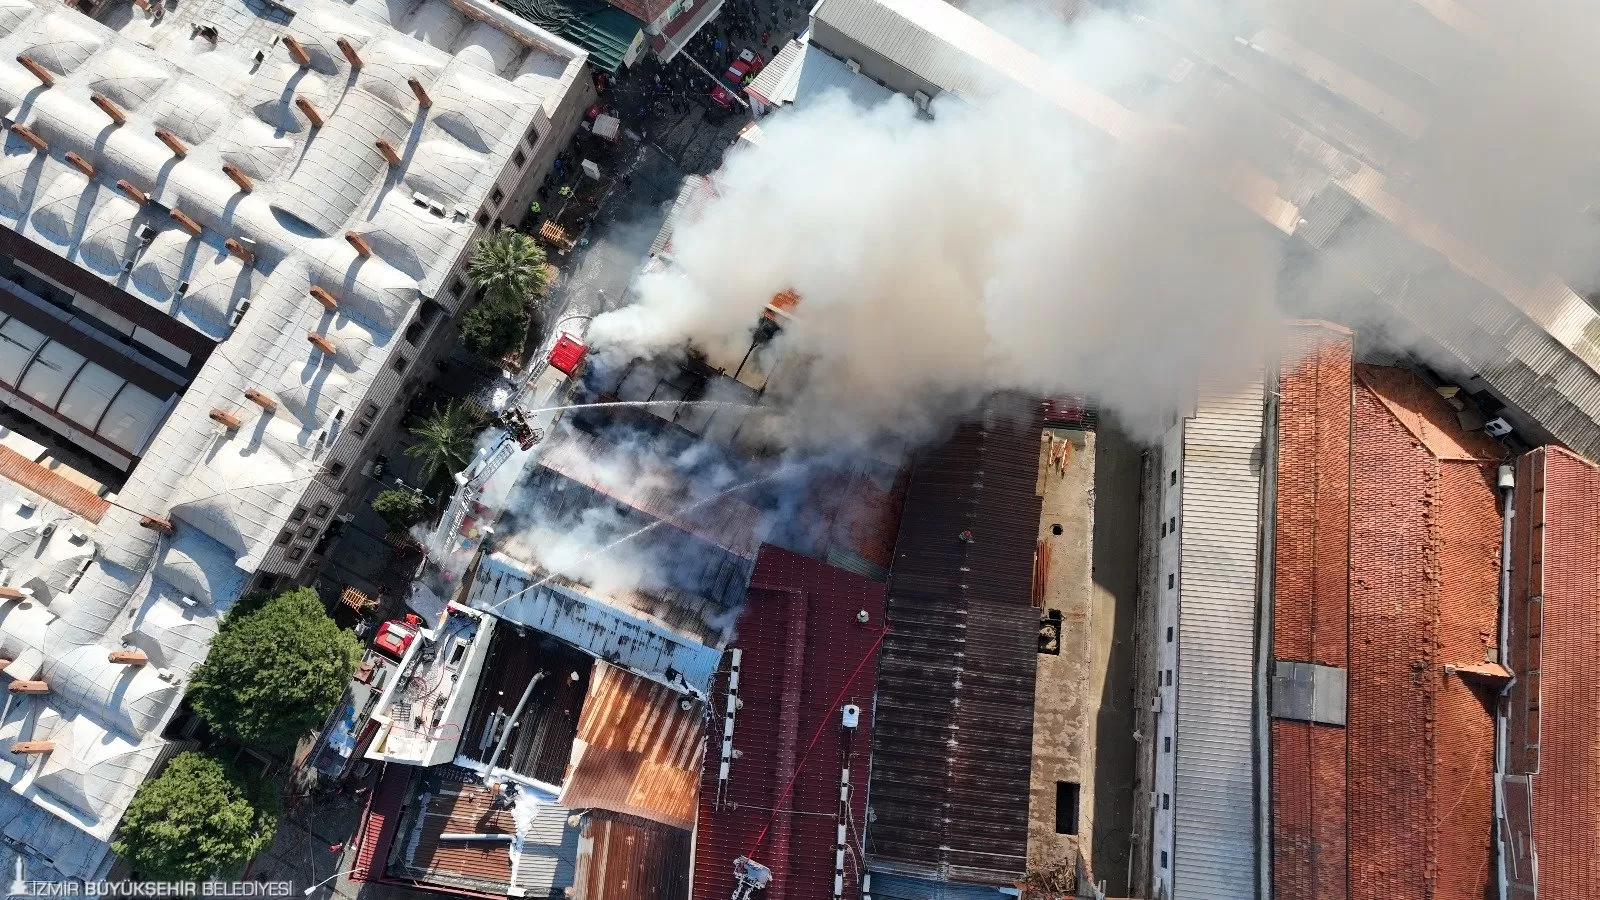 İzmir'in tarihi çarşısı Kemeraltı'nda dün sabah saatlerinde çıkan yangın, büyük panik yarattı.